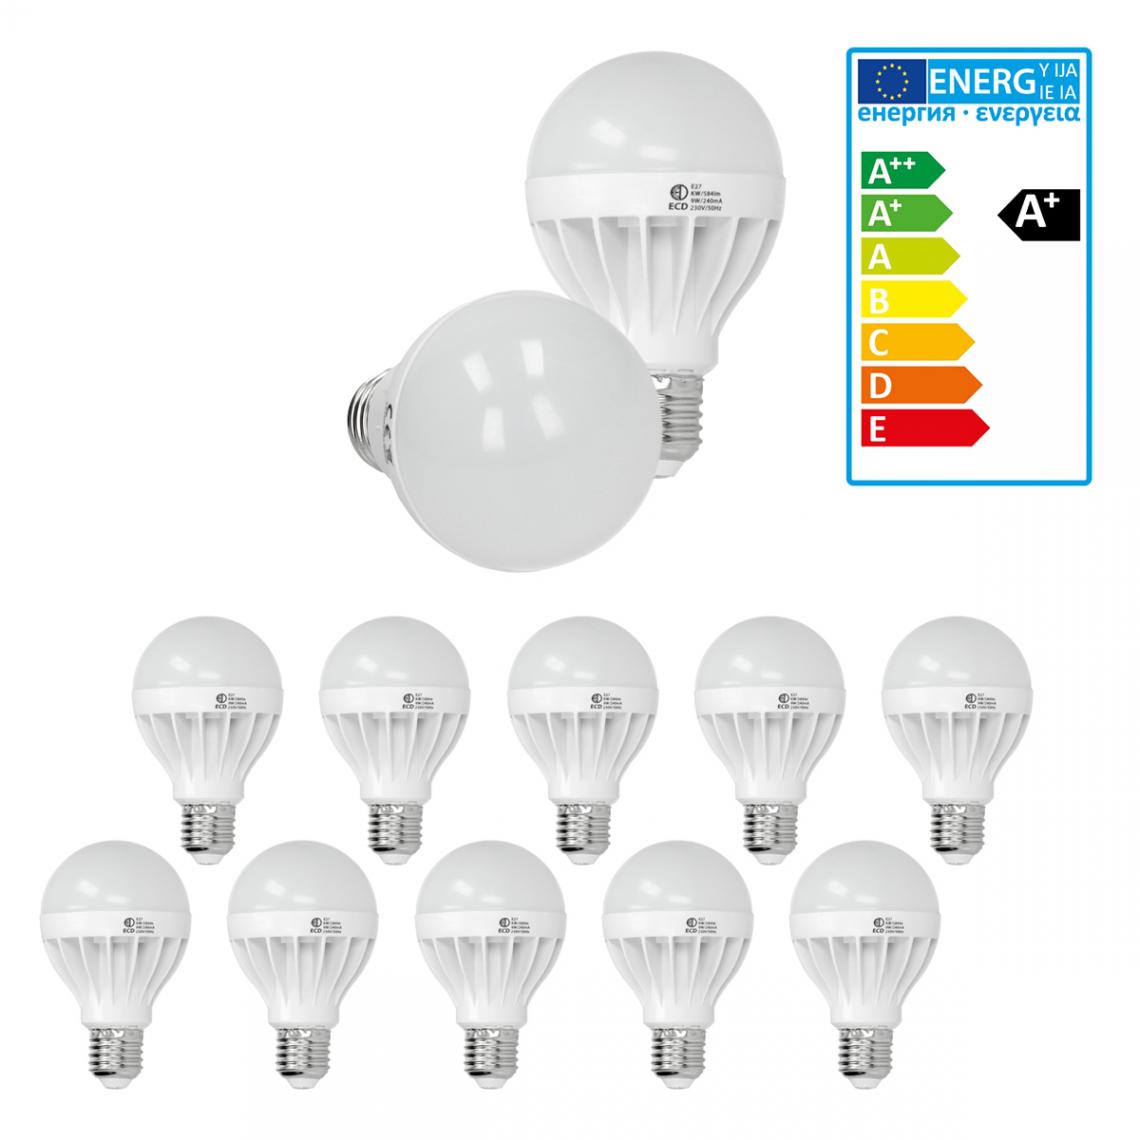 Ecd Germany - ECD Germany 10 x 9W E27 LED Lampe | 6000 Kelvin blanc froid | 584 lumens | 220-240 V | remplace une ampoule halogène de 60 W | Ampoules à économie d'énergie - Ampoules LED